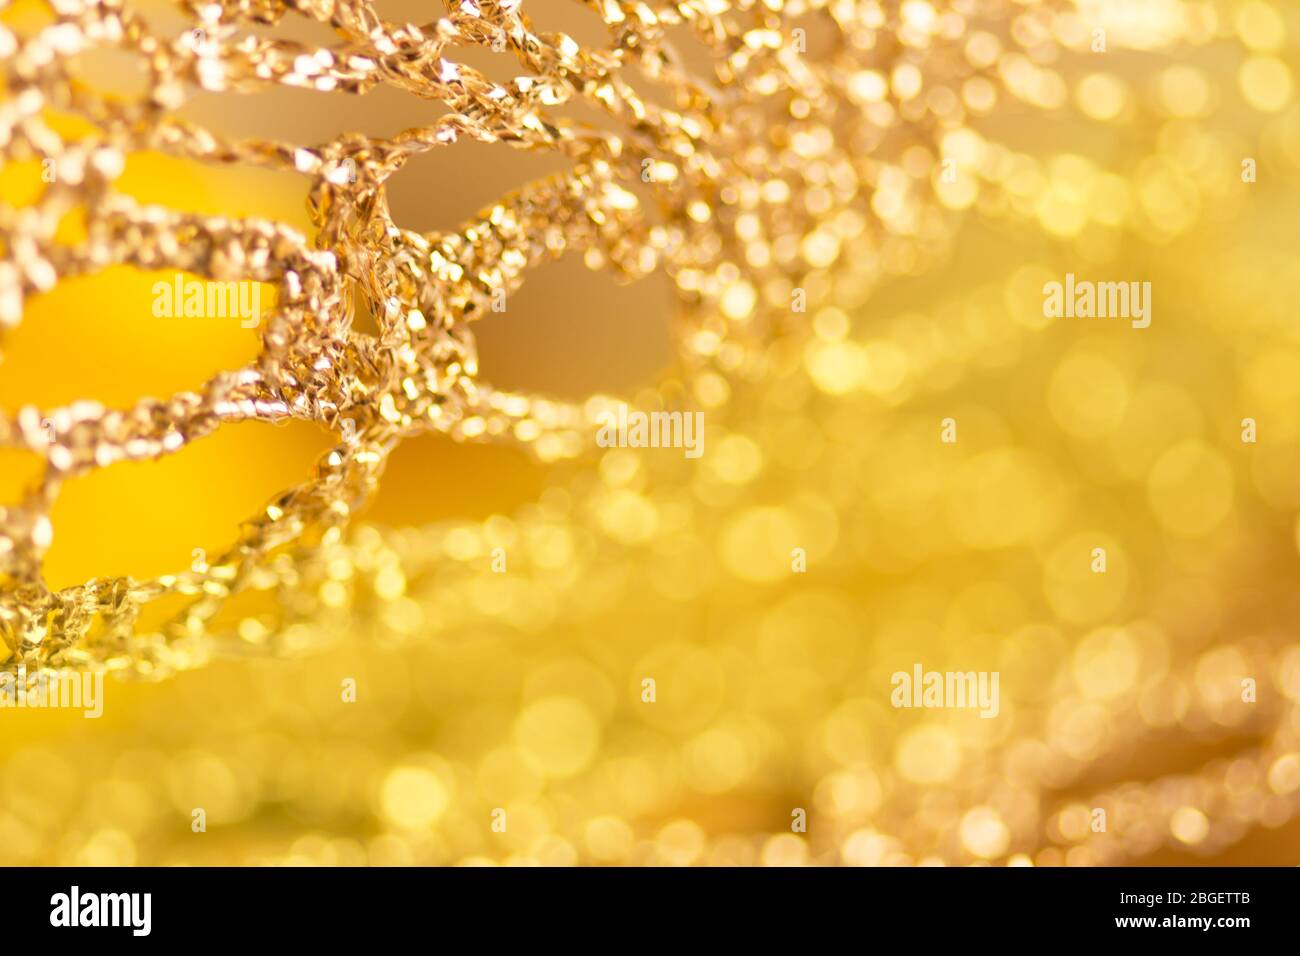 Nền vải cưới vàng, hoa văn nơ vàng sẽ mang đến cho bạn một không gian ấm áp và thân thiện. Với các chi tiết tinh tế và độc đáo, bạn sẽ tìm thấy nguồn cảm hứng cho ngày cưới của mình. Tìm hiểu thêm về giải pháp thiết kế nền vải cưới vàng, hoa văn nơ vàng để khám phá những ý tưởng sáng tạo cho ngày cưới của bạn.